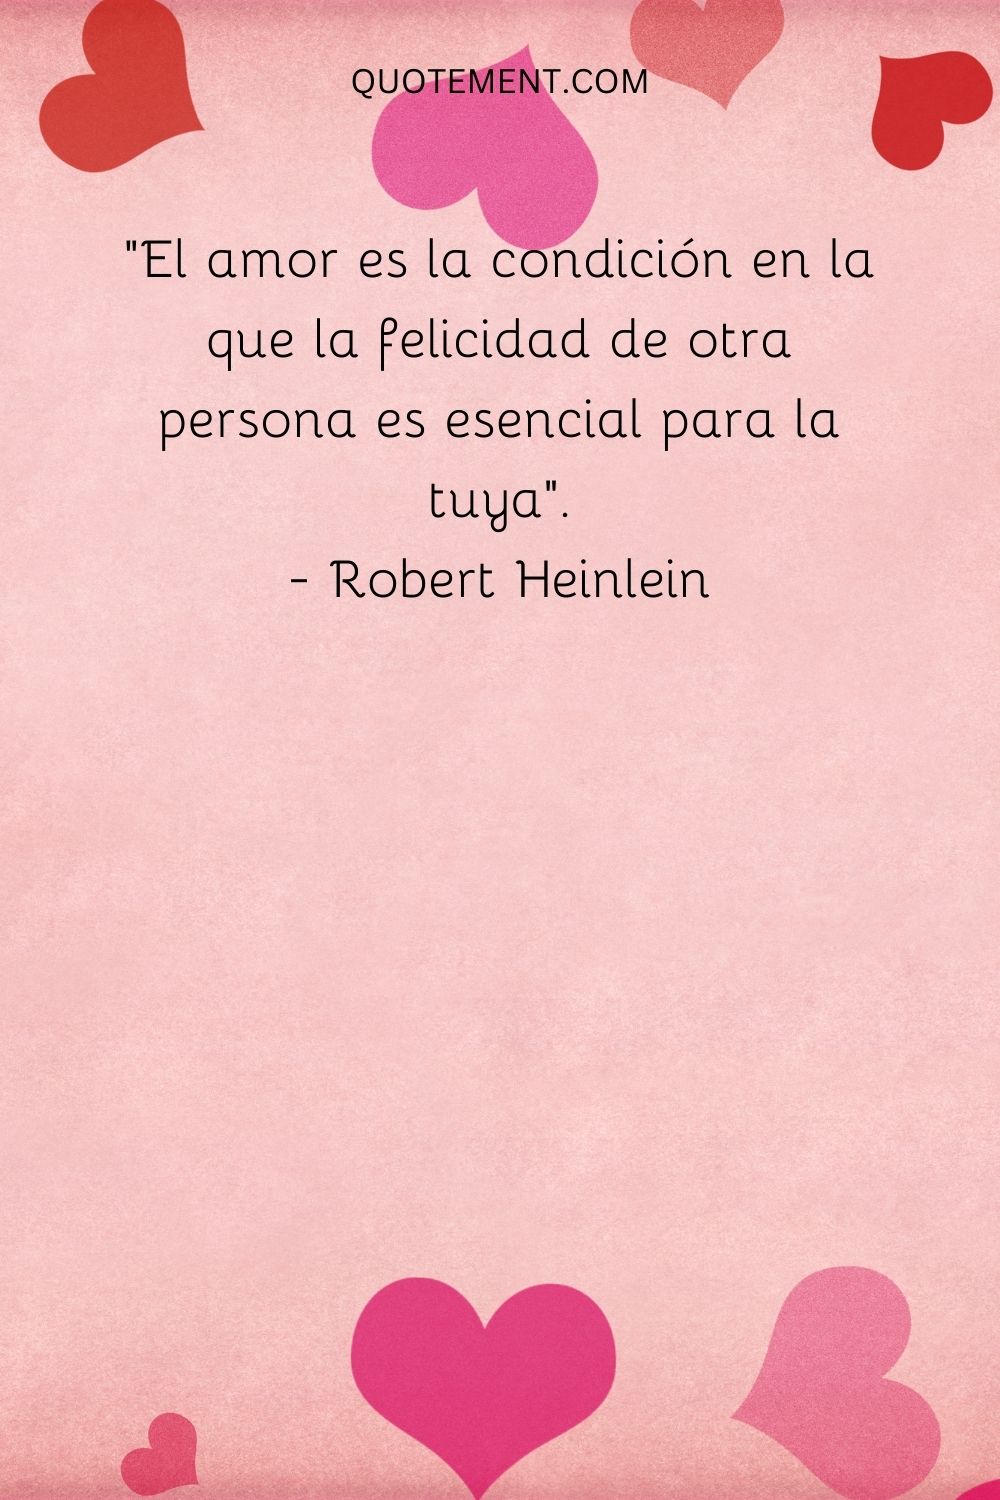 "El amor es la condición en la que la felicidad de otra persona es esencial para la tuya". - Robert Heinlein